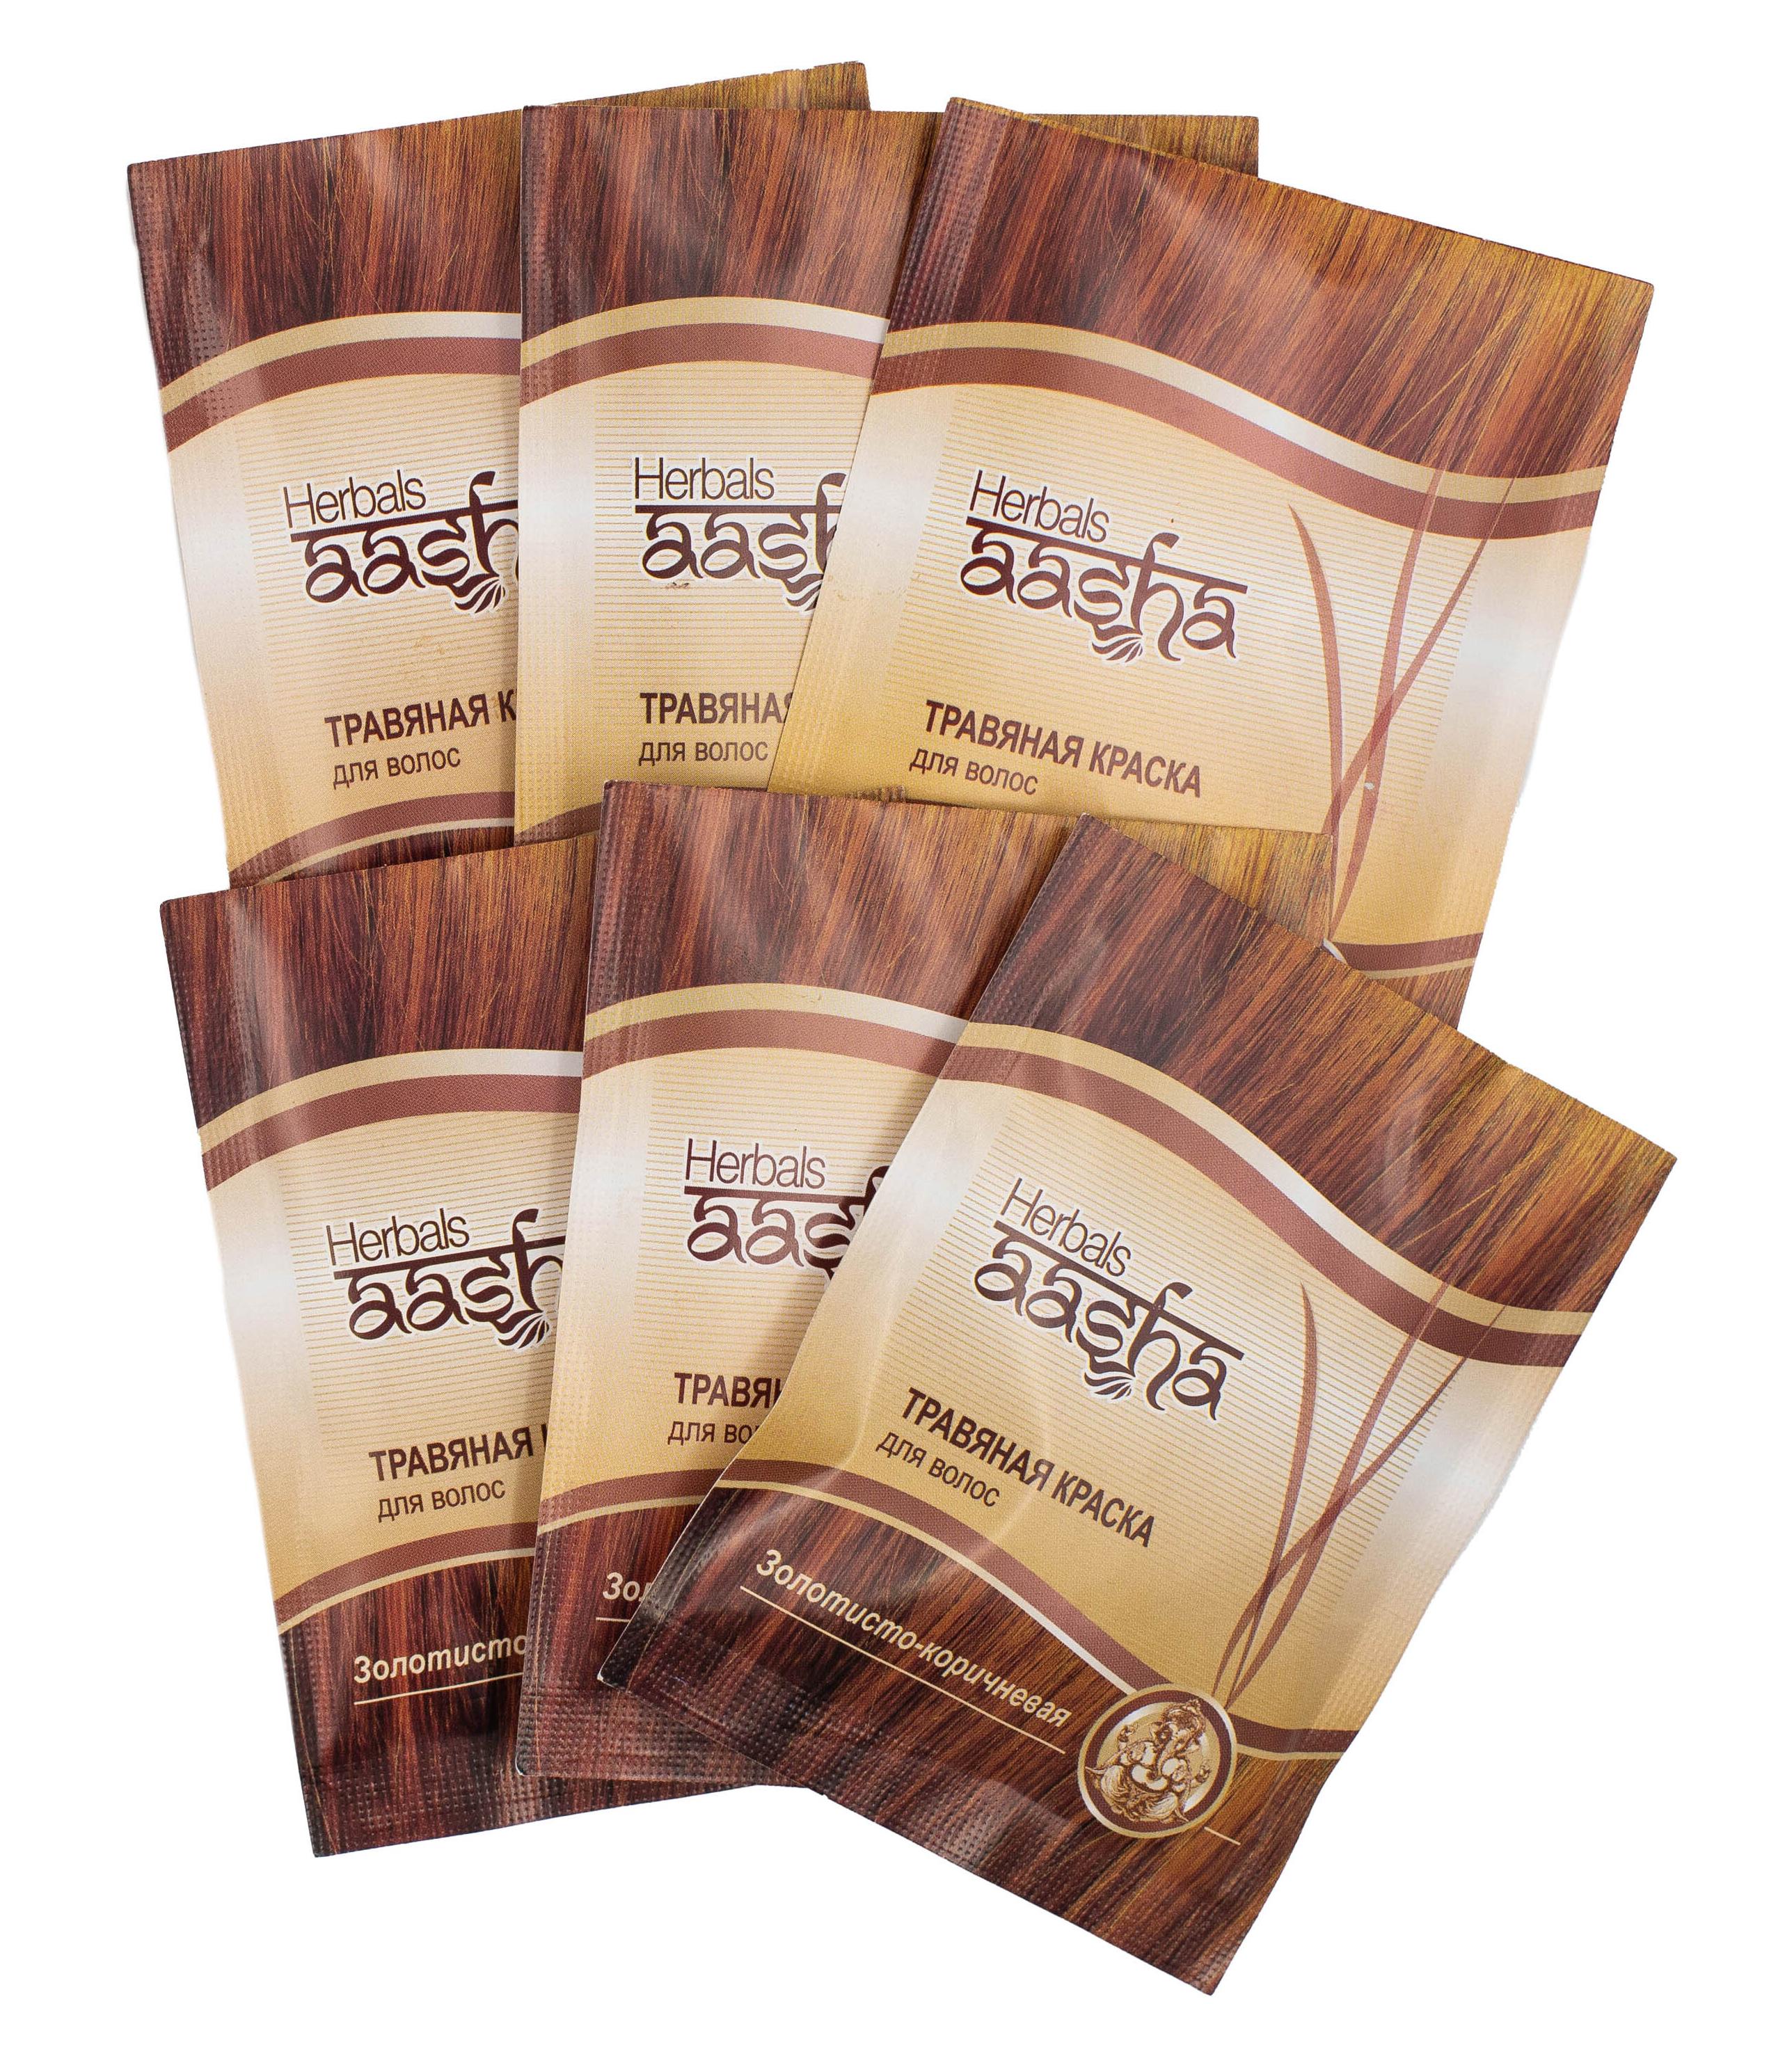 Краска травяная для волос золотисто-коричневая aasha herbals 60 гр